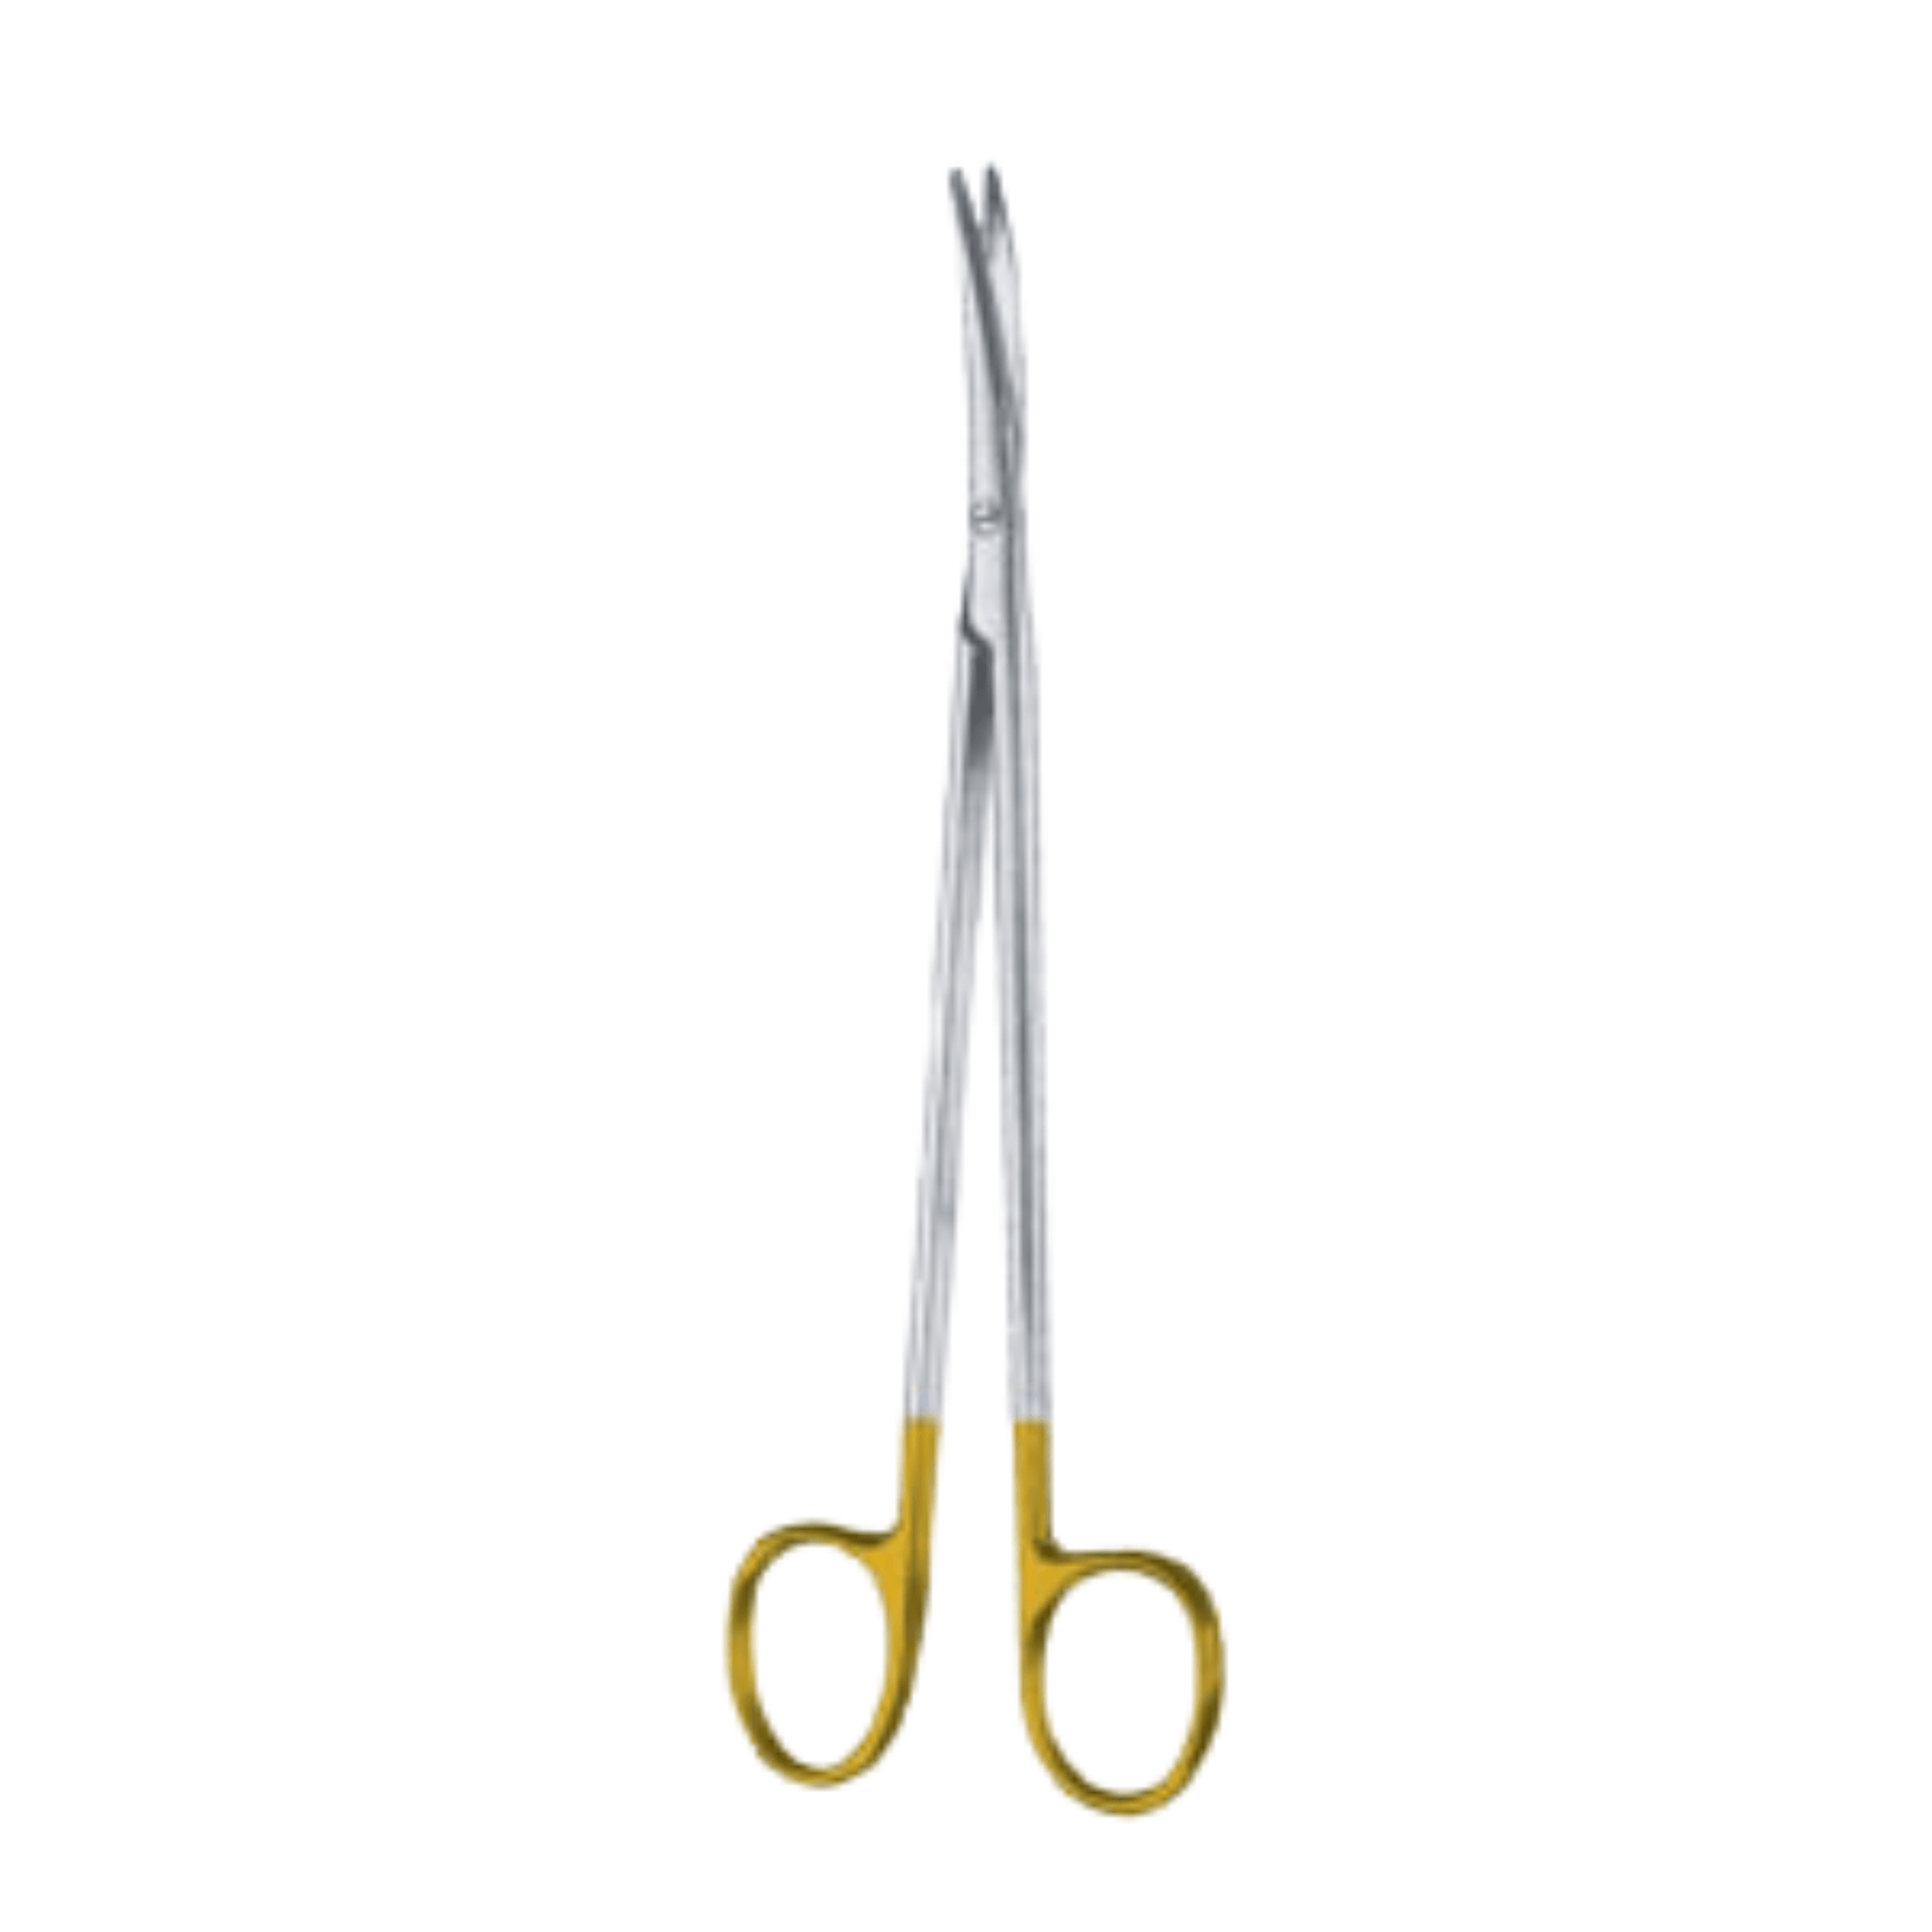 Metzenbaum Scissors- BL/BL, Curved, TUC, 18 cm